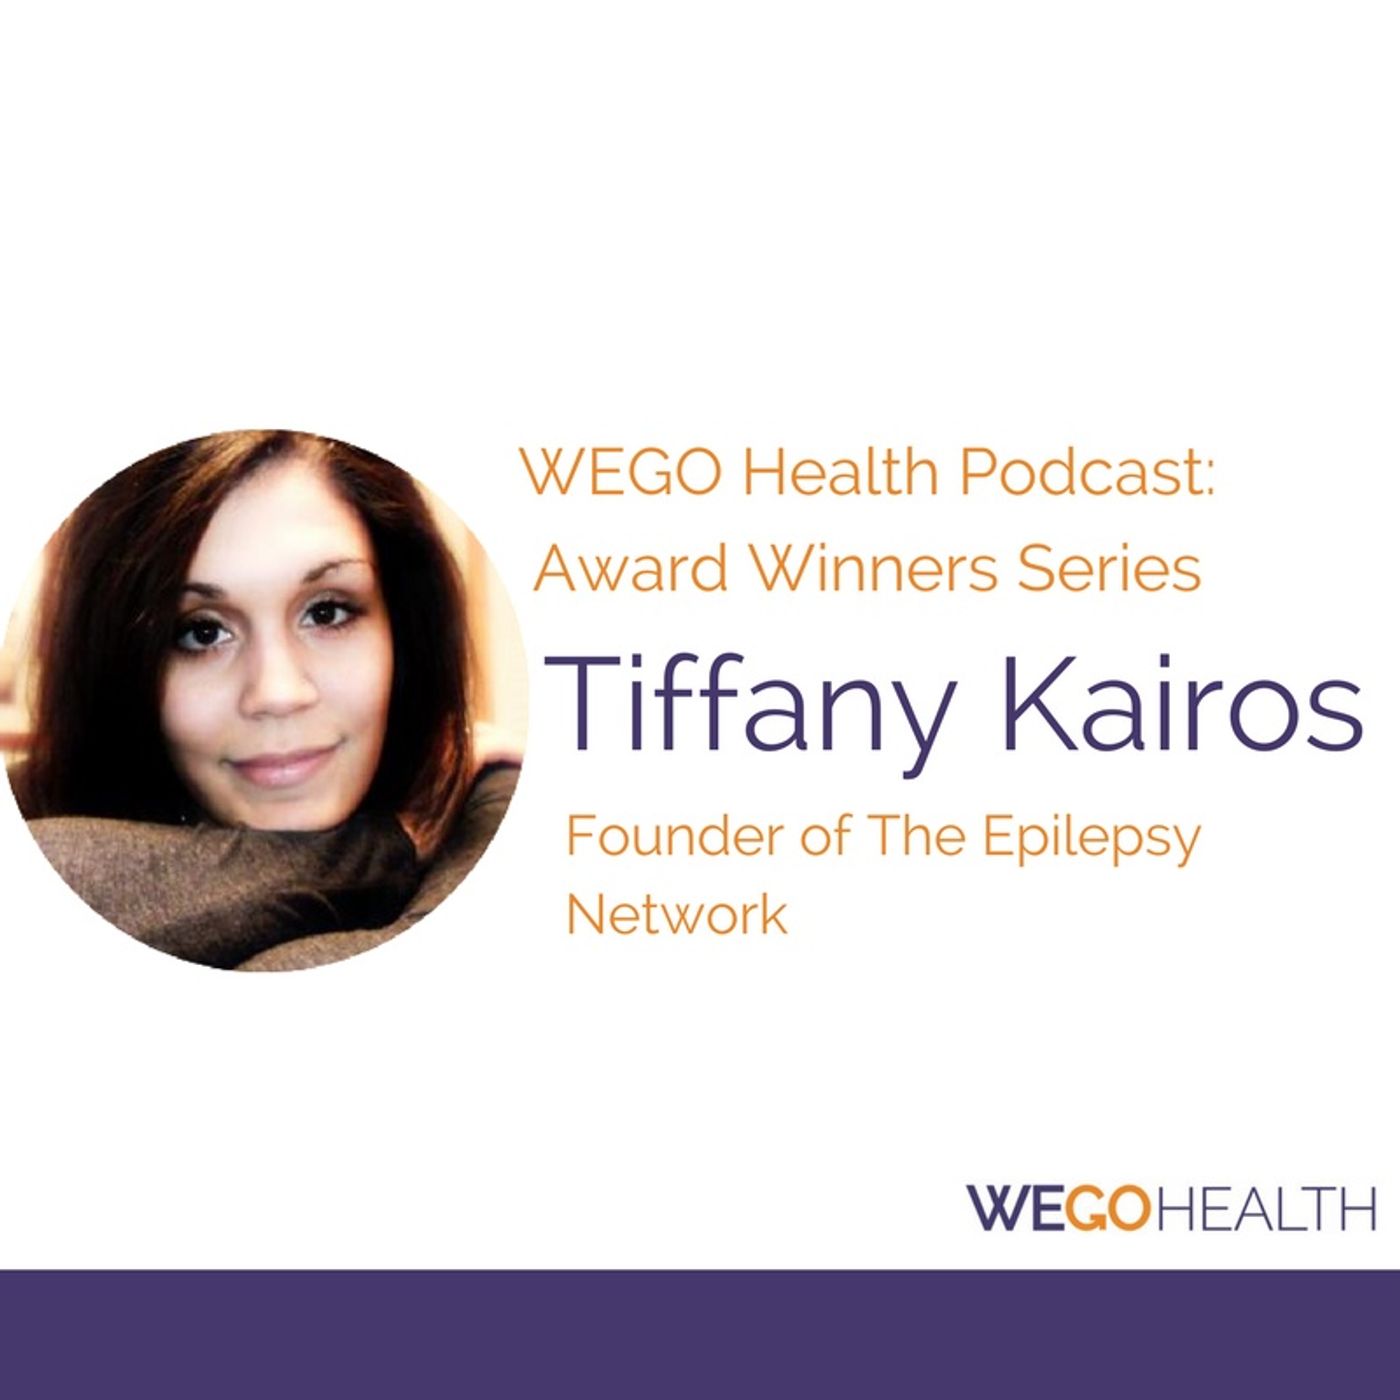 WEGO Health Podcast - Tiffany Kairos